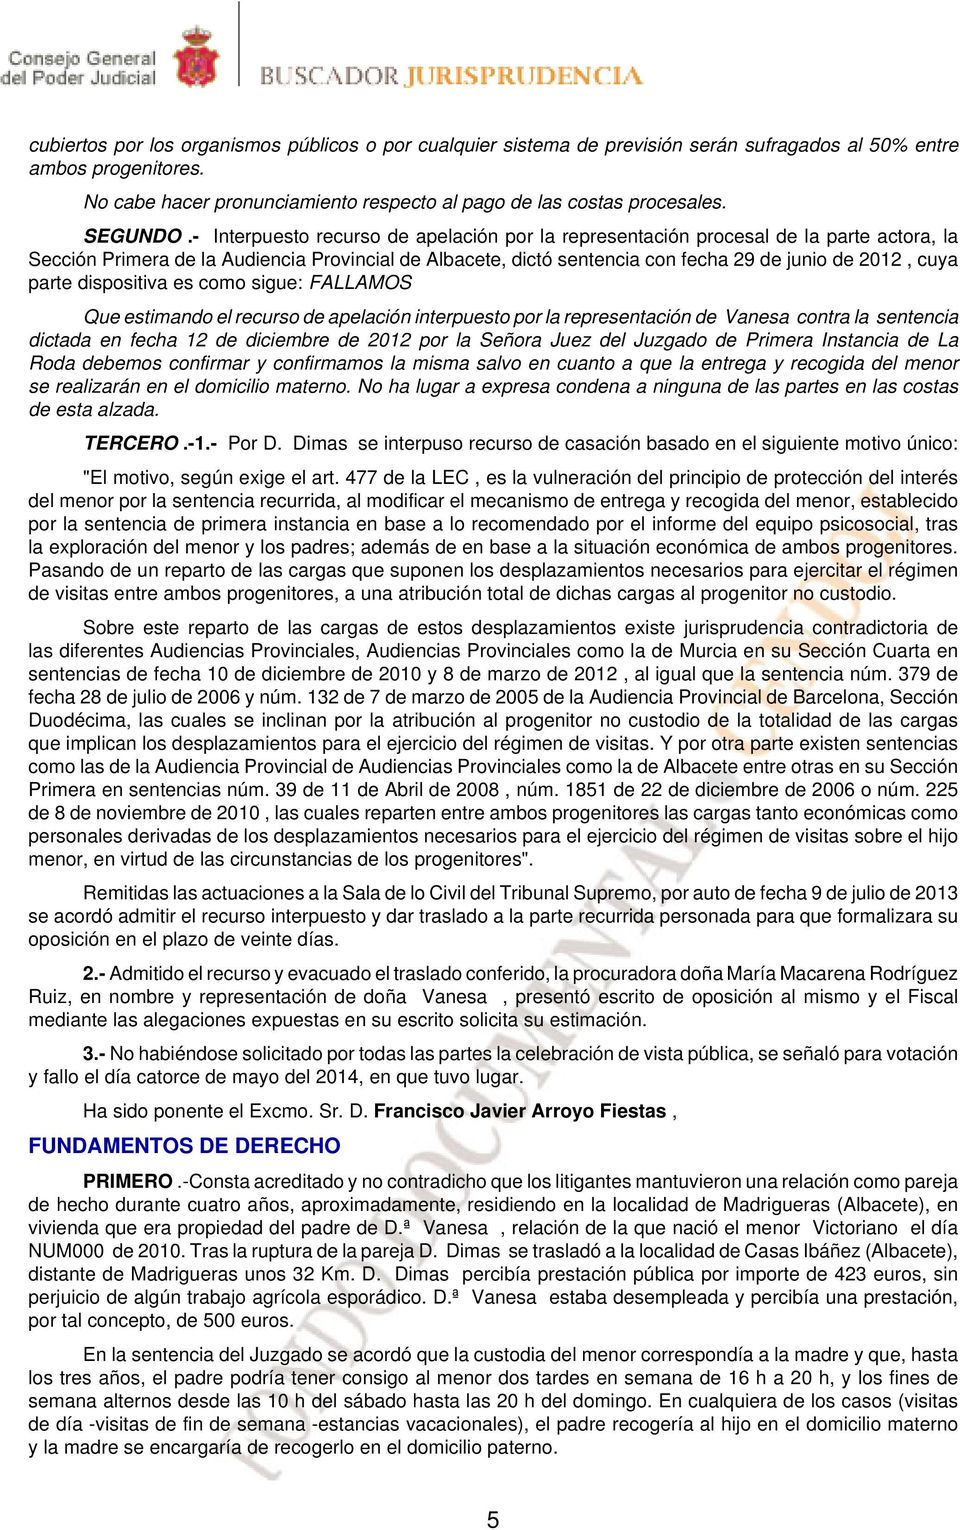 - Interpuesto recurso de apelación por la representación procesal de la parte actora, la Sección Primera de la Audiencia Provincial de Albacete, dictó sentencia con fecha 29 de junio de 2012, cuya